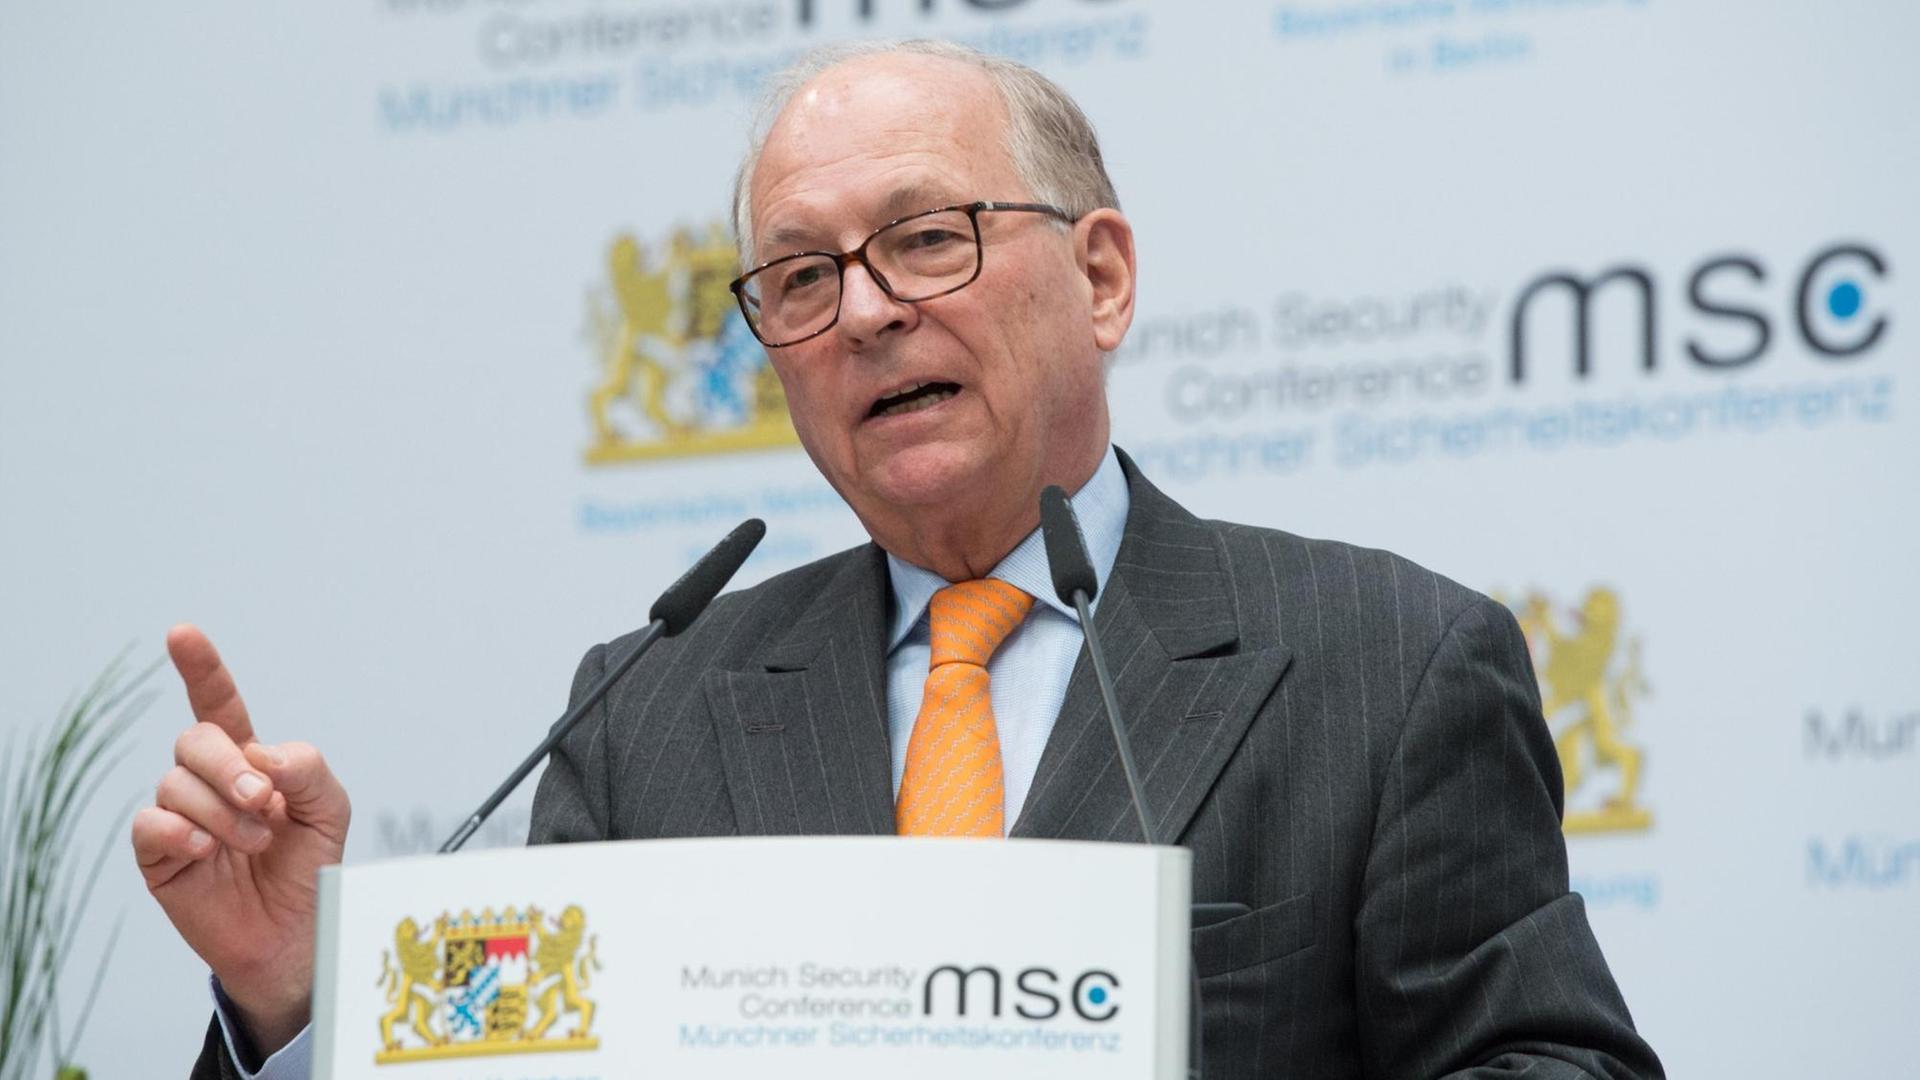 Wolfgang Ischinger, Vorsitzender der Münchner Sicherheitskonferenz, am Rednerpult